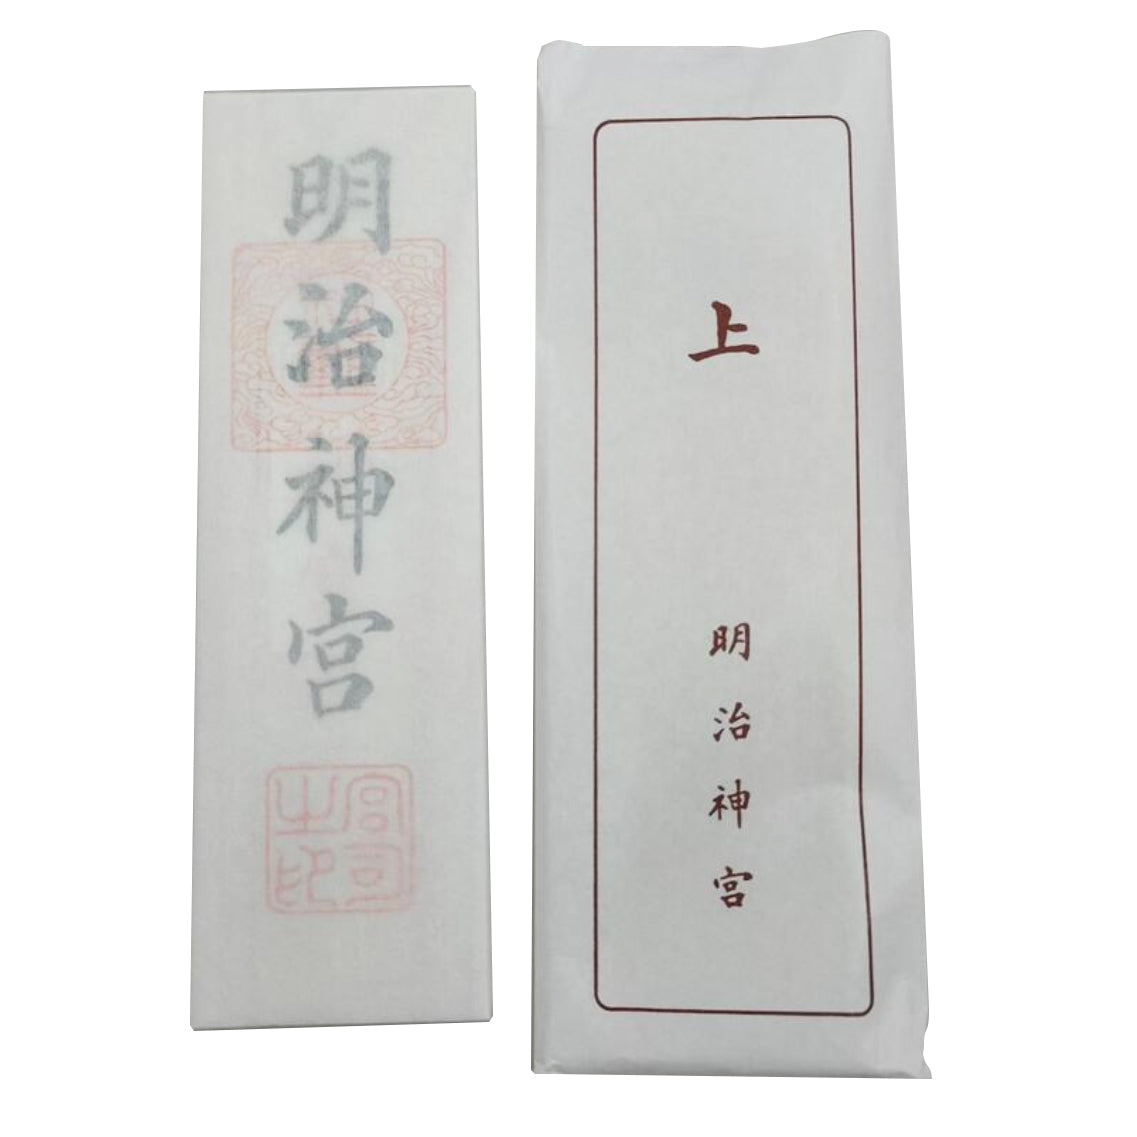 Japan Meiji Jingu，Special talisman (Meiji Jingu character)talisman，Paper tag packaging